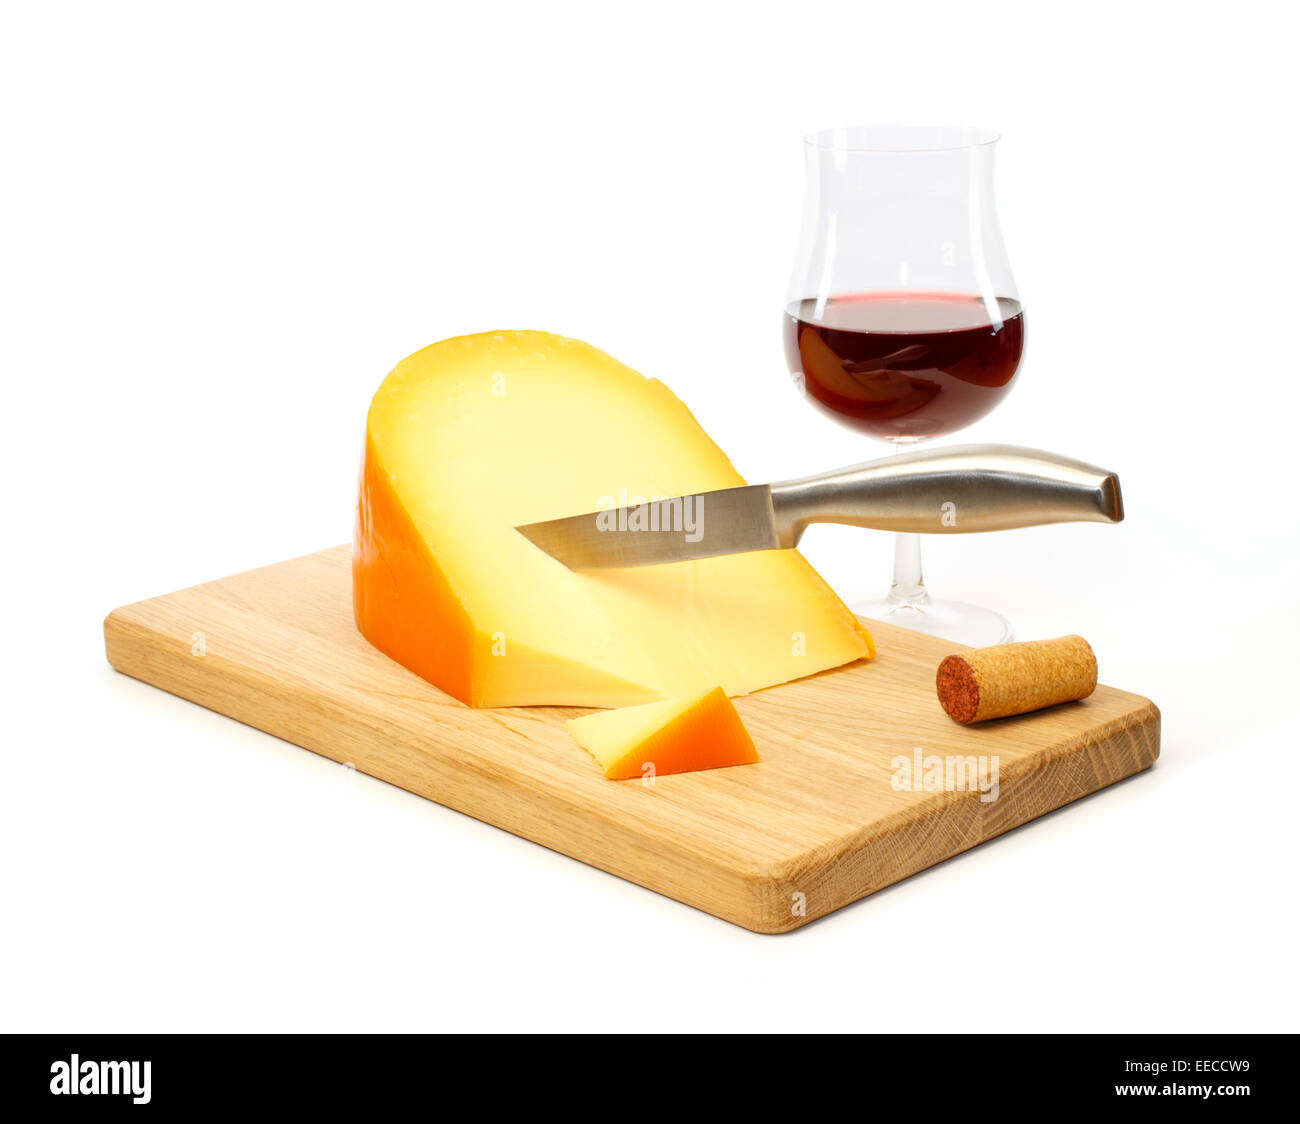 La vie encore d'un couteau à fromage jaune sur une planche à découper avec un verre de vin rouge contre fond blanc Banque D'Images